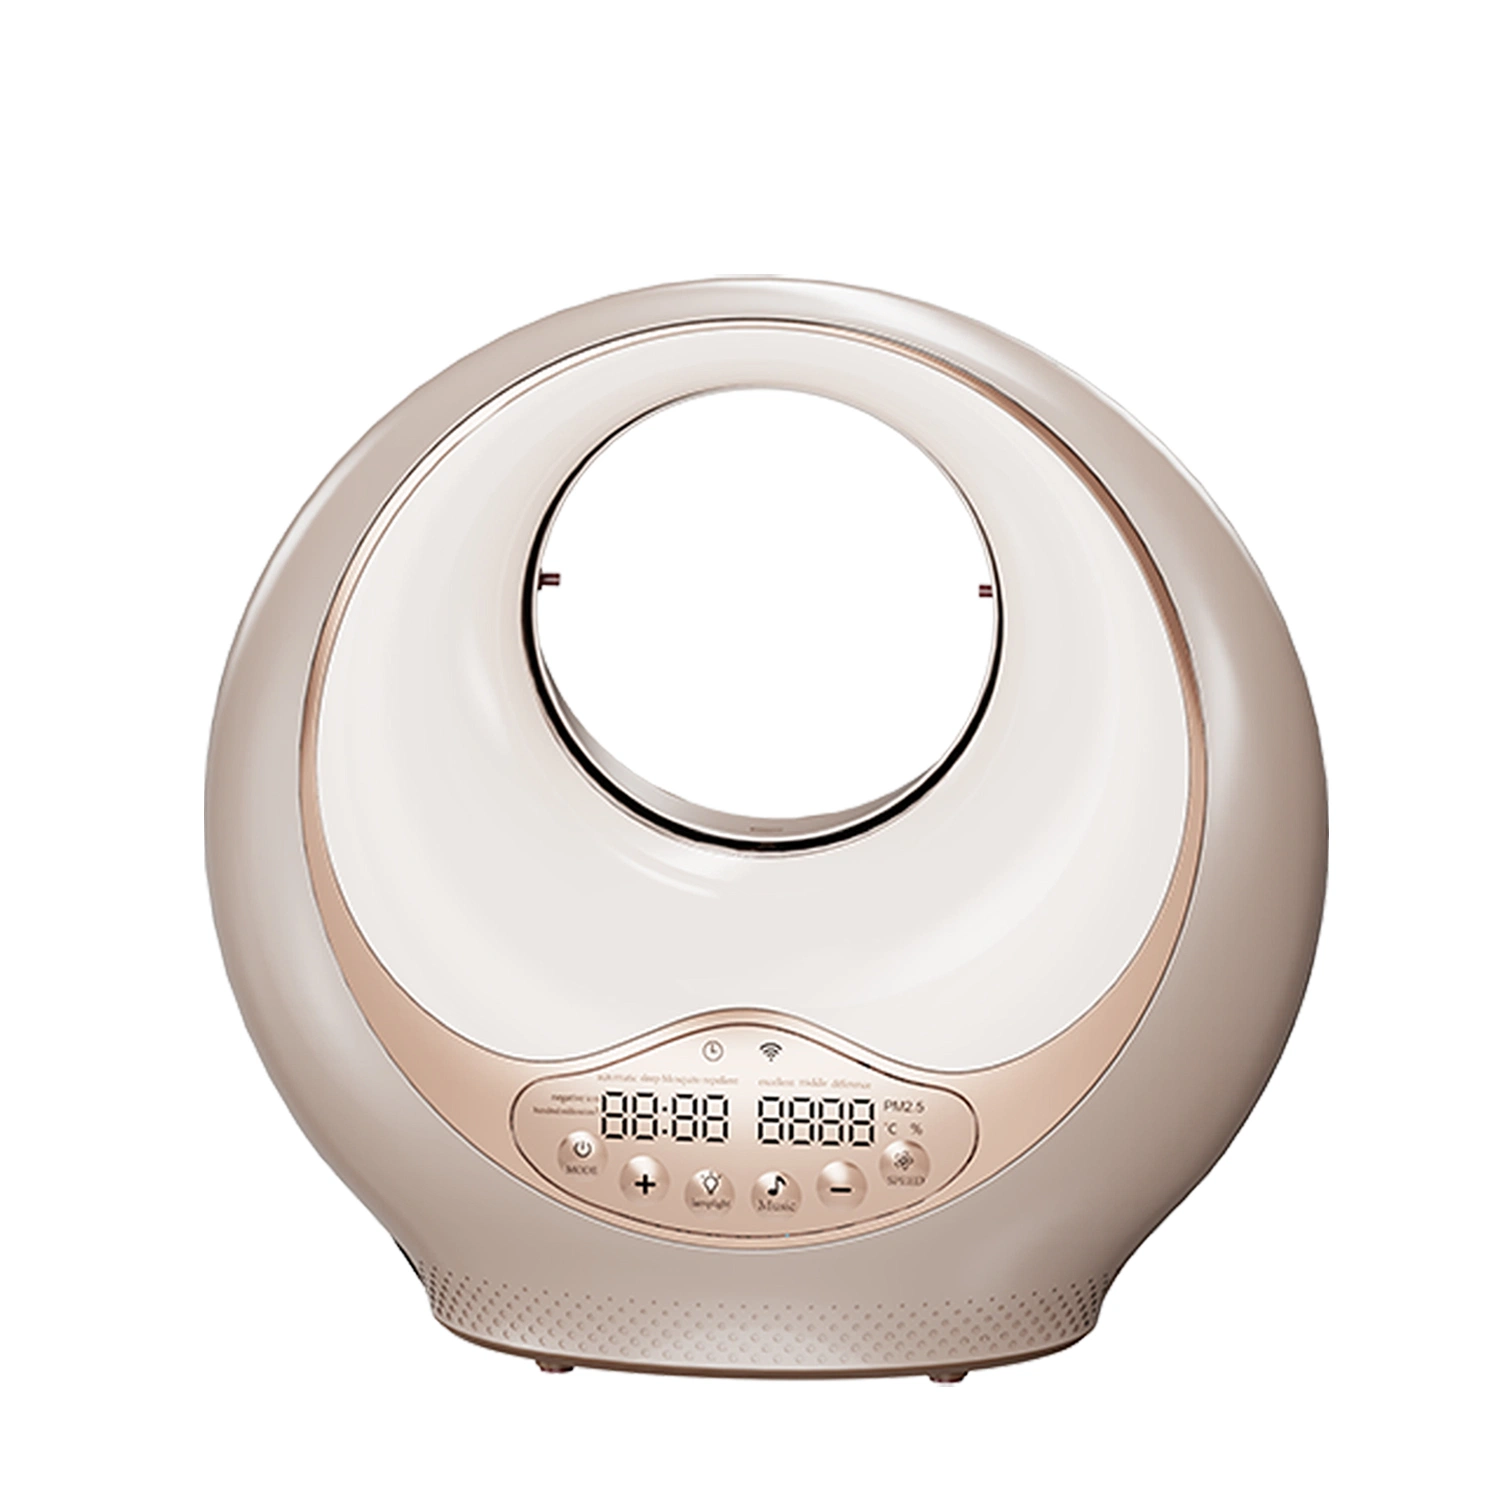 Olansi Venta caliente Botón silicona relajarse Dispositivo de ayuda de sueño Sound Machine ruido blanco purificador de aire H13